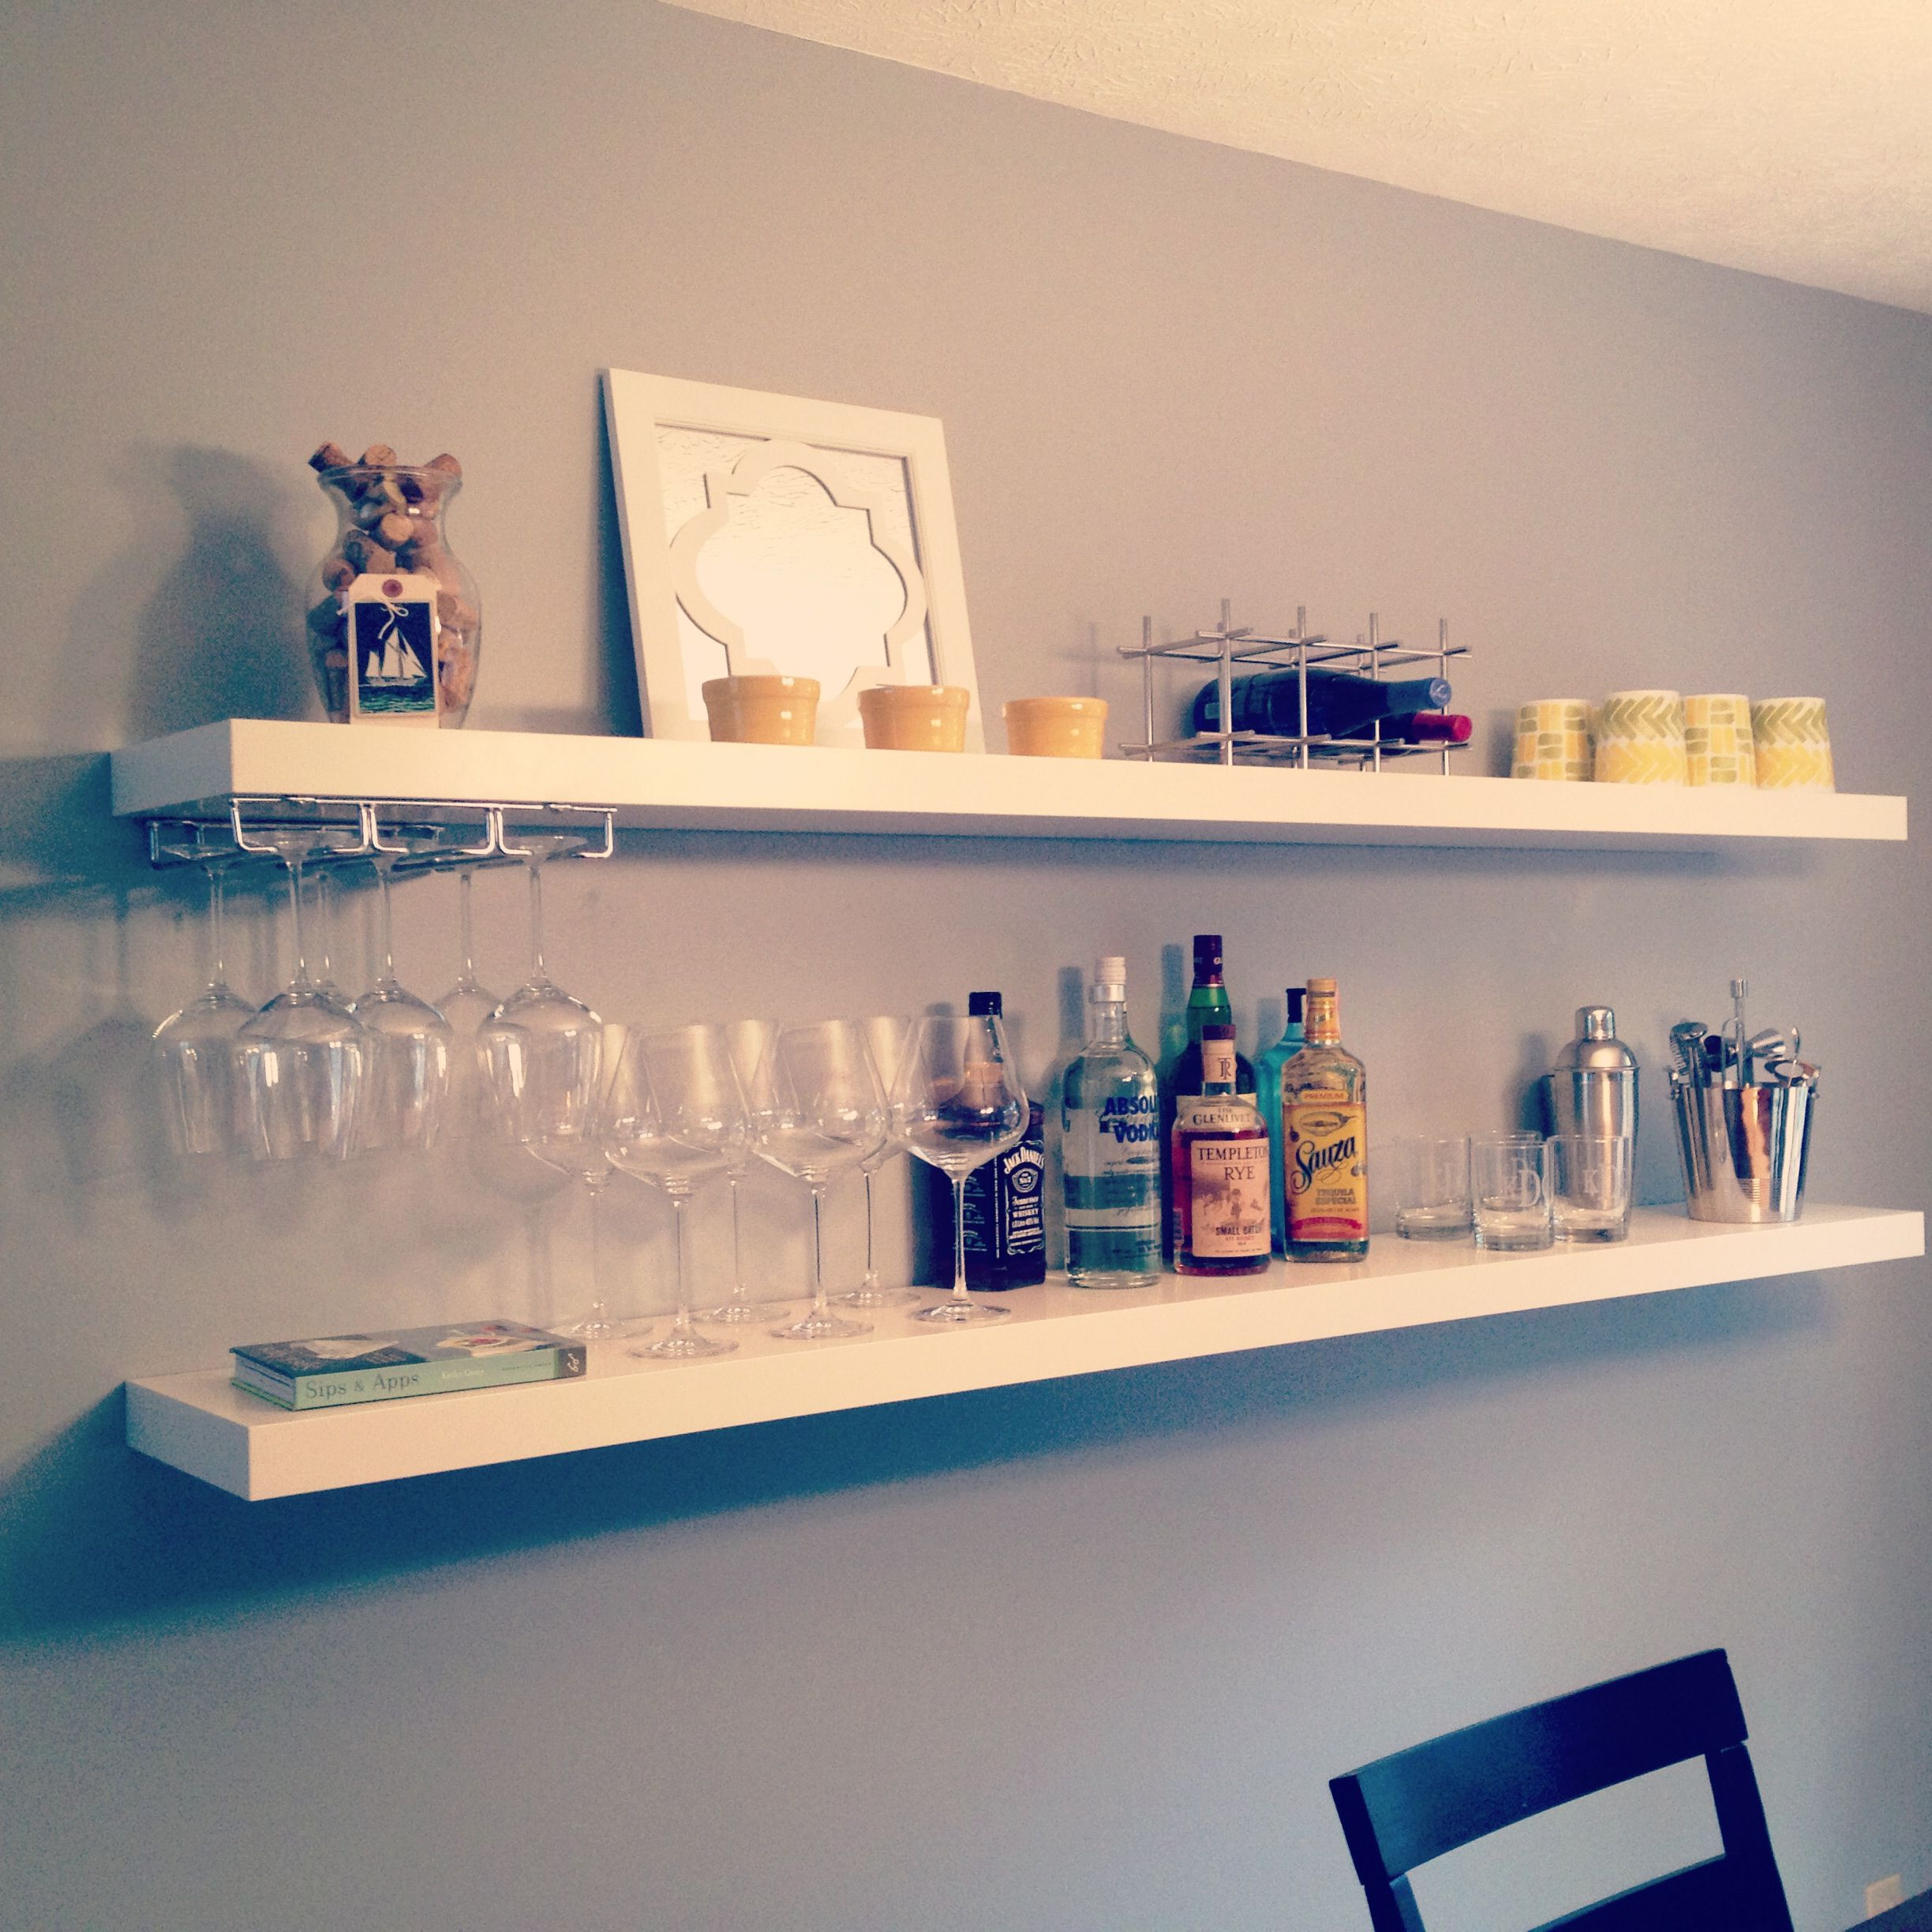 Ikea Kitchen Wall Shelves
 Easy DIY bar using $20 Ikea shelves via